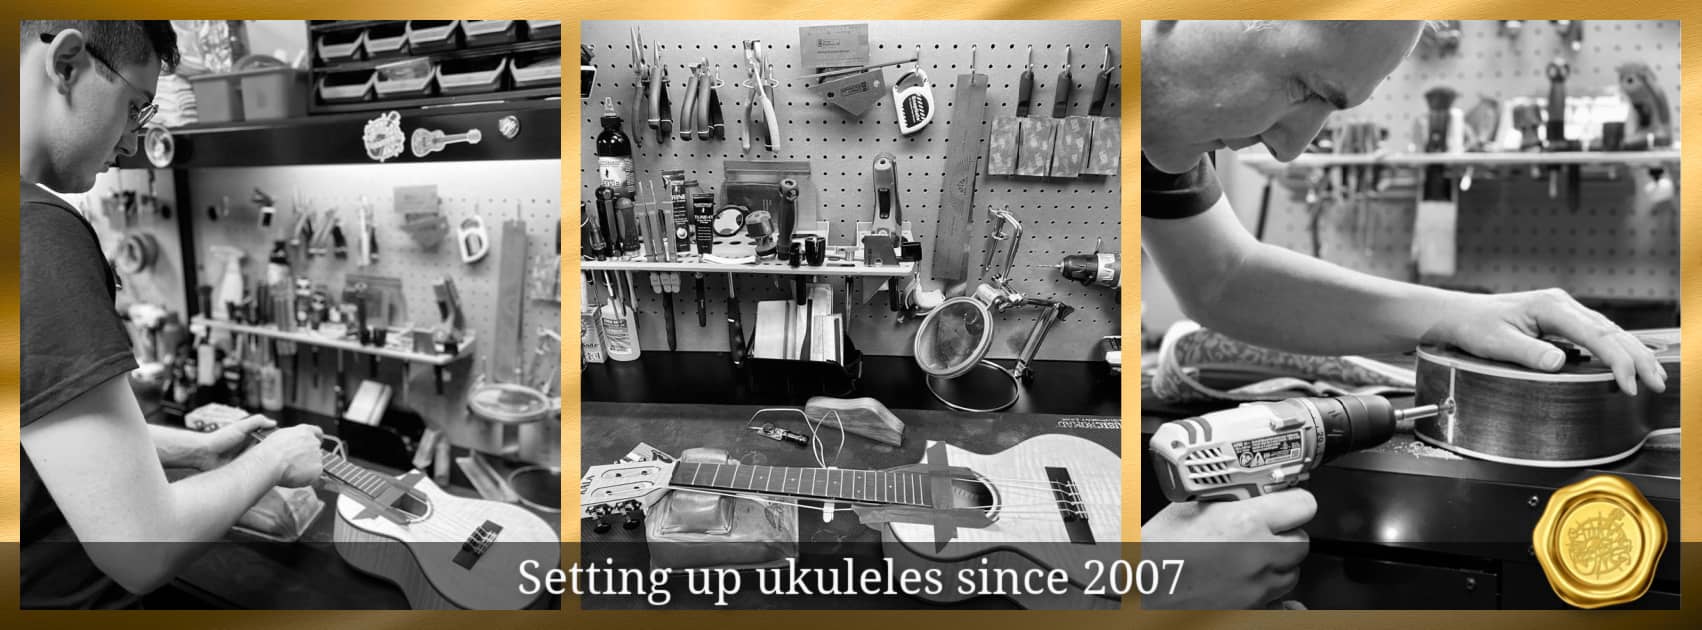 Ukulele Setup at UKE Republic is always included